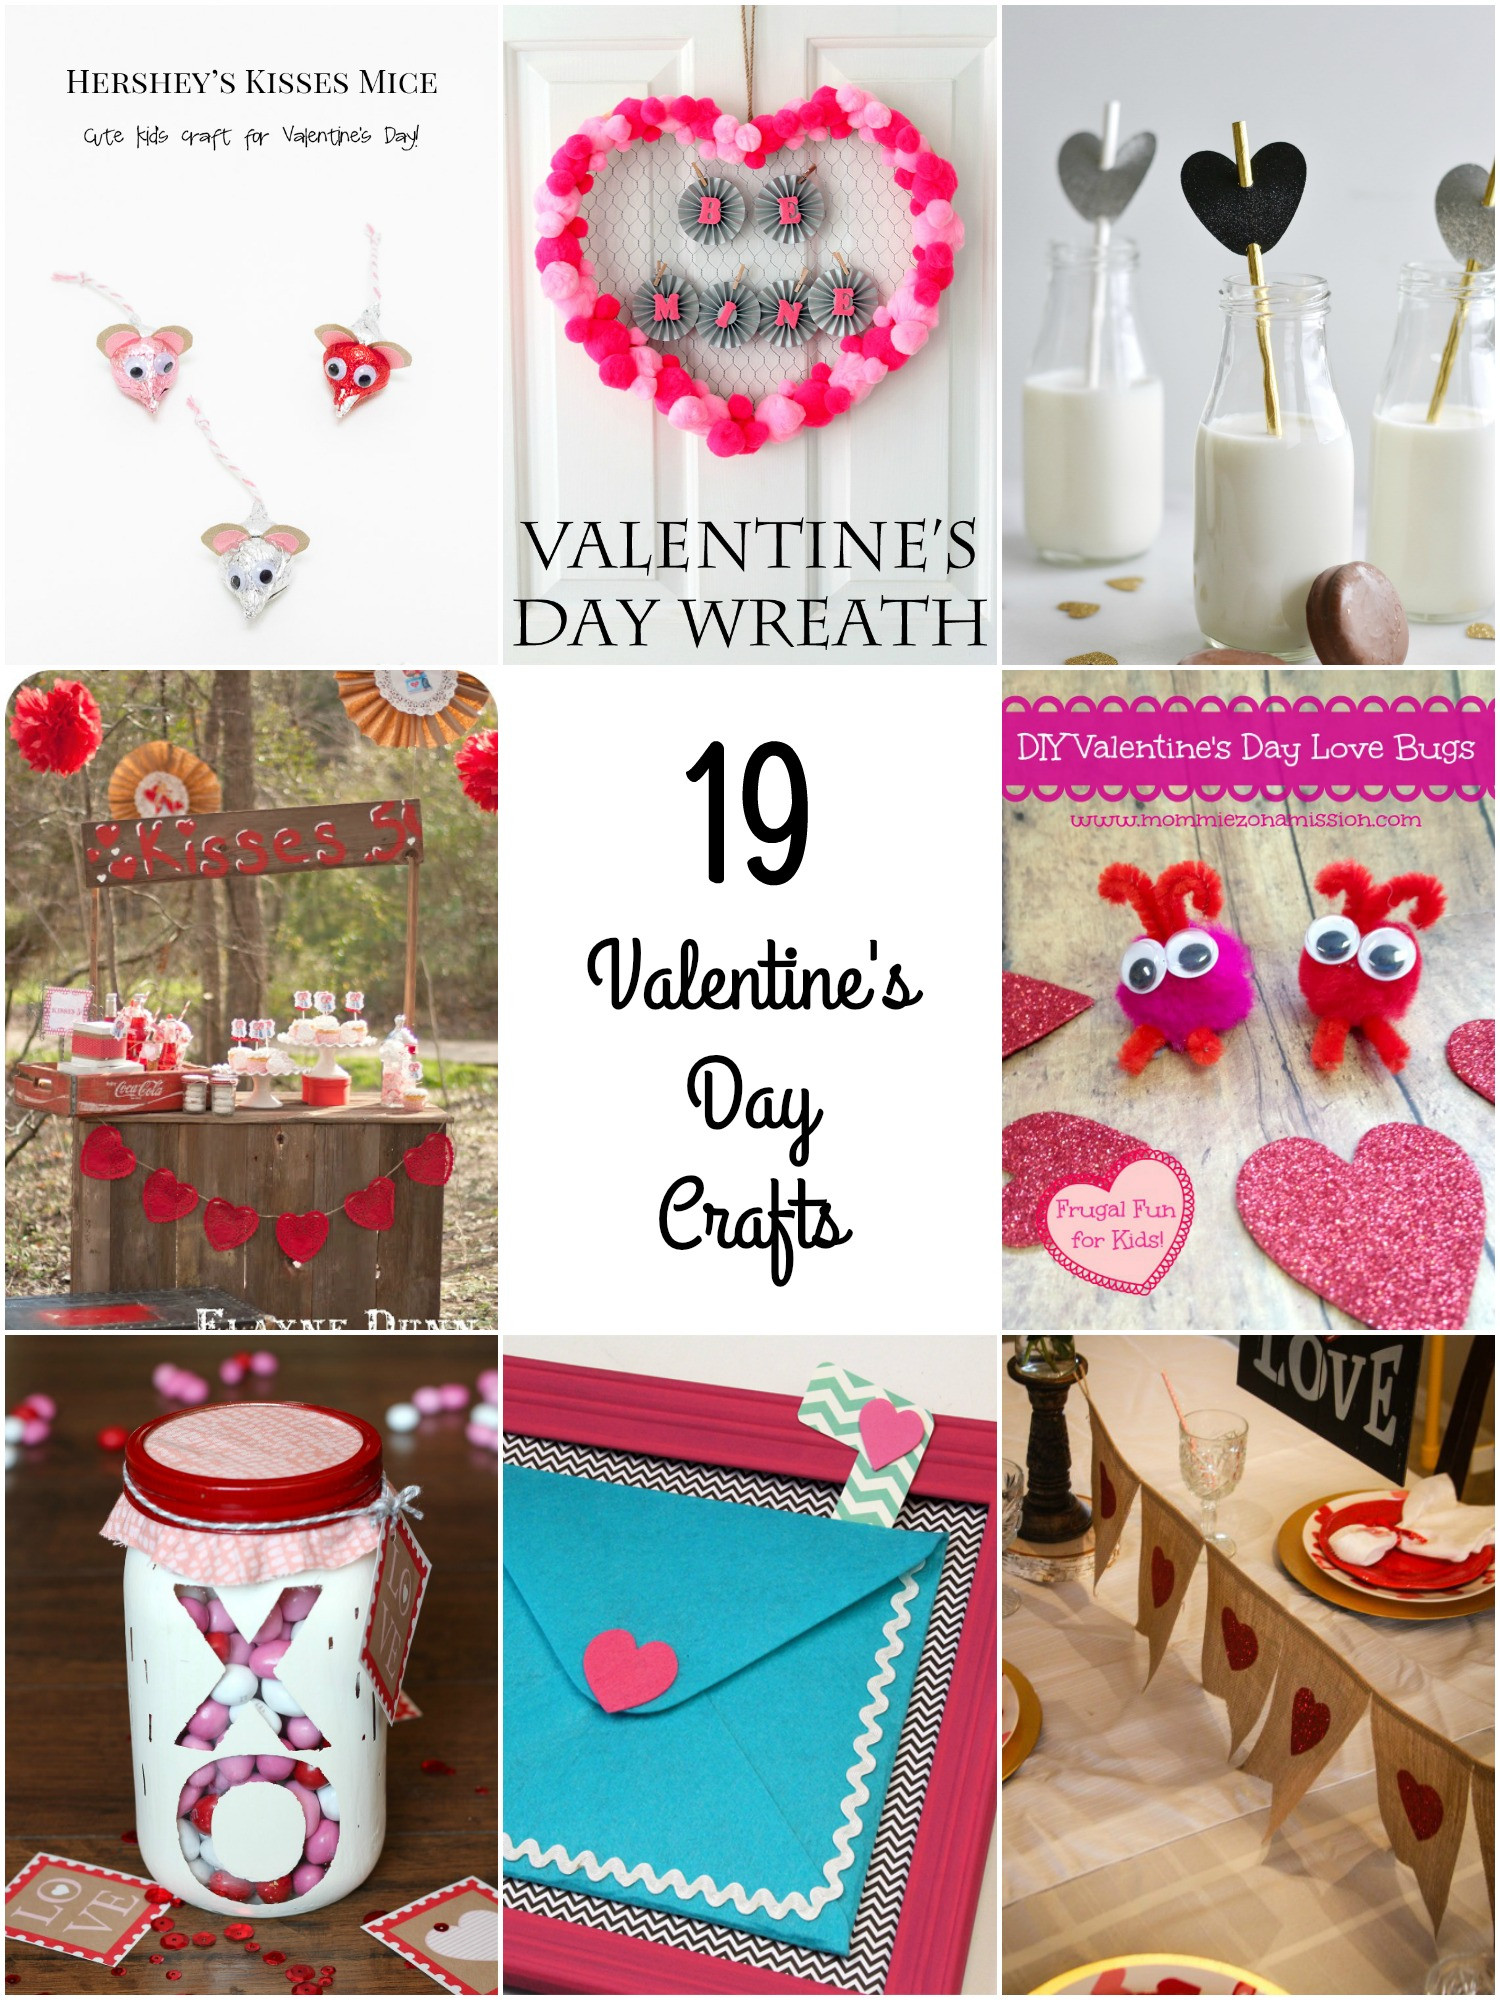 Valentines Day Craft Ideas
 So Creative 19 Fun Valentine s Day Crafts